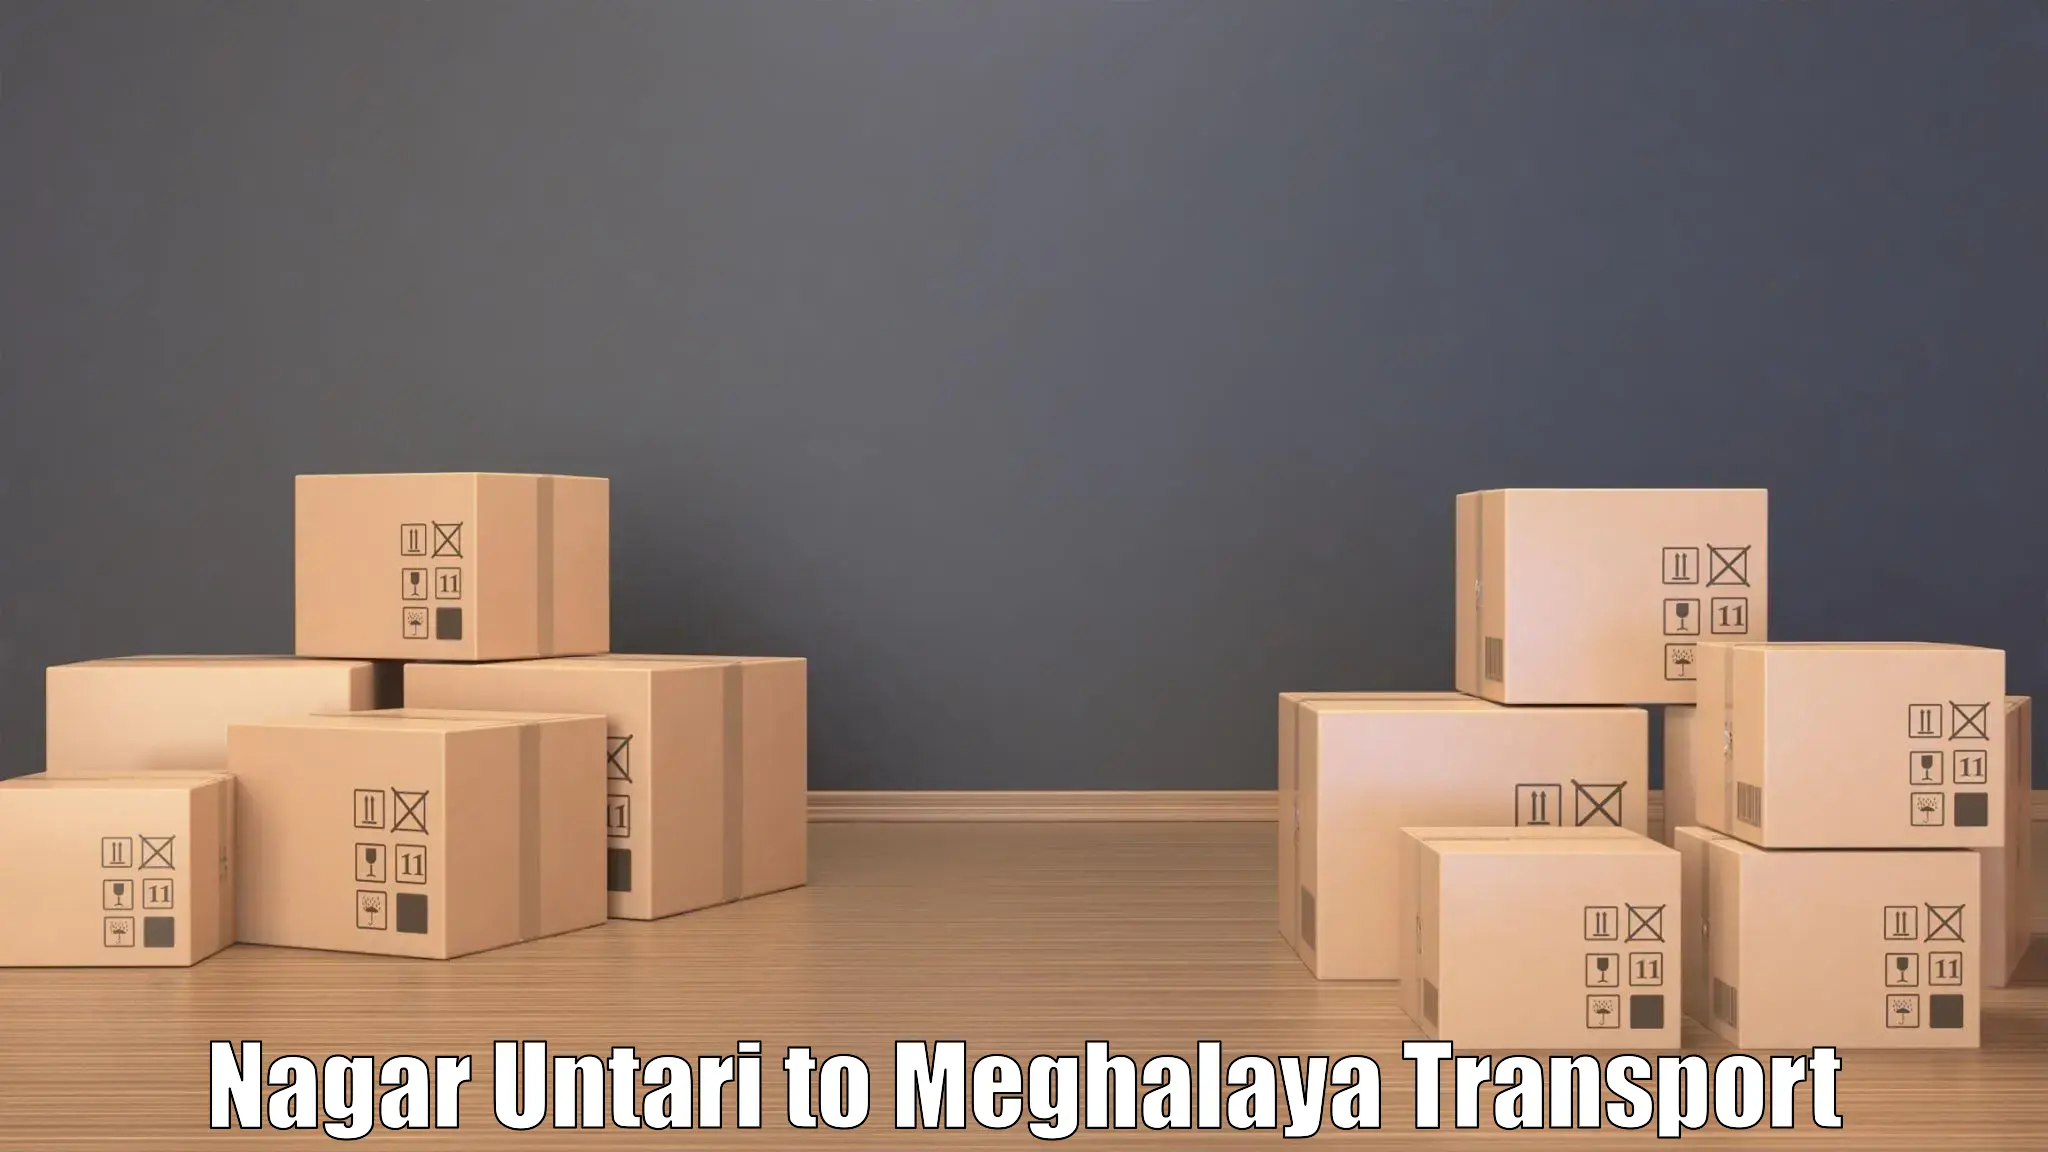 Container transport service Nagar Untari to Meghalaya